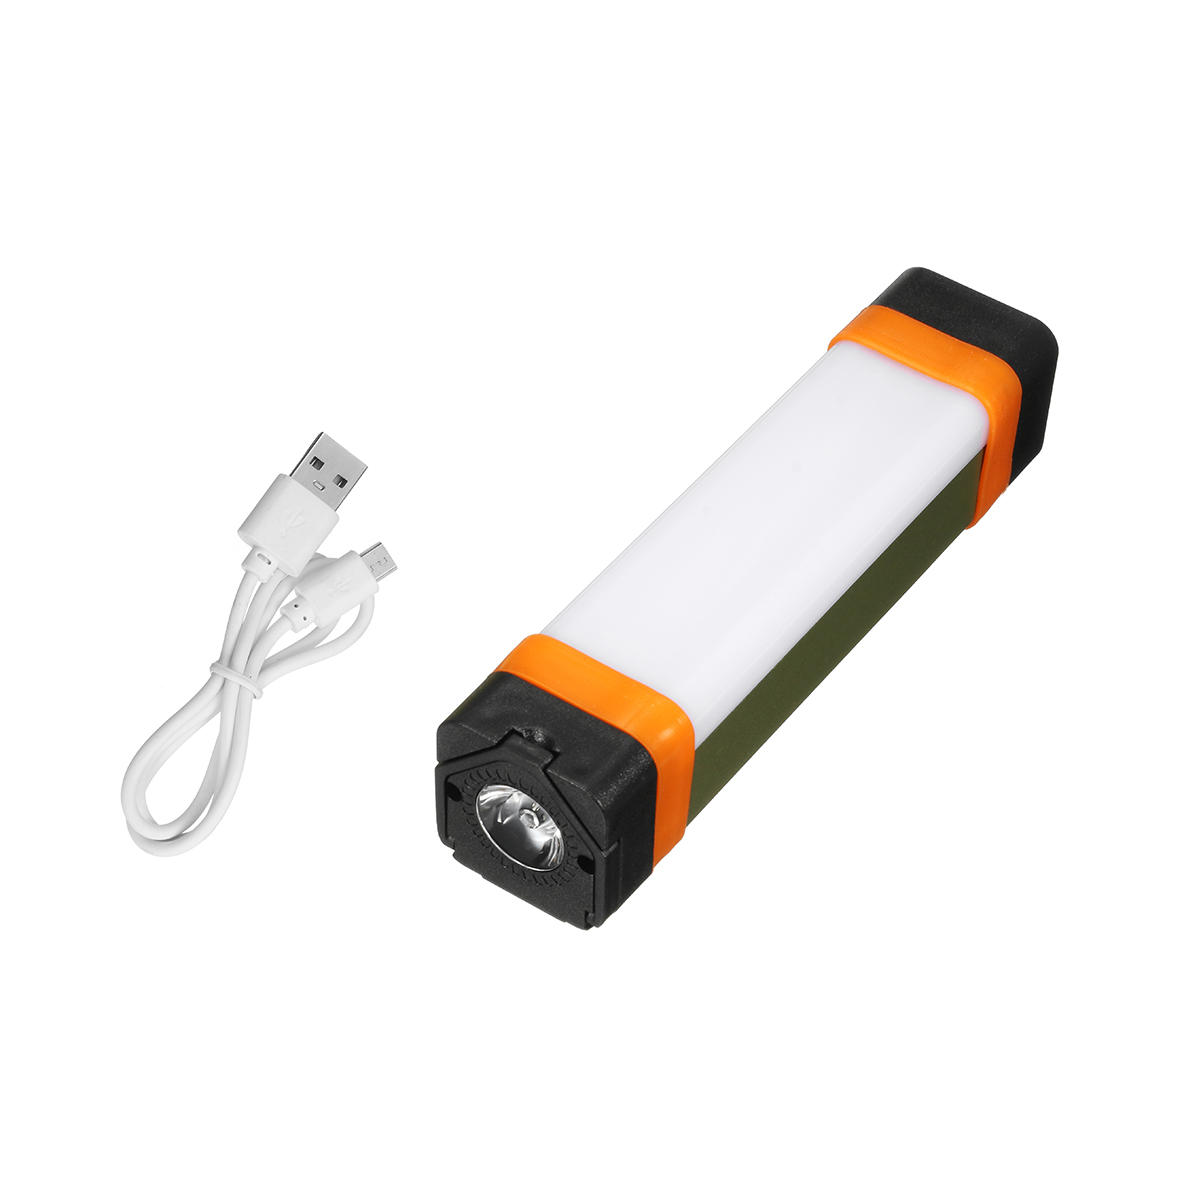 Camping multifonctions extérieur USB Rechargeable Emergency Light Power Bank Lampe de travail avec aimant et crochet